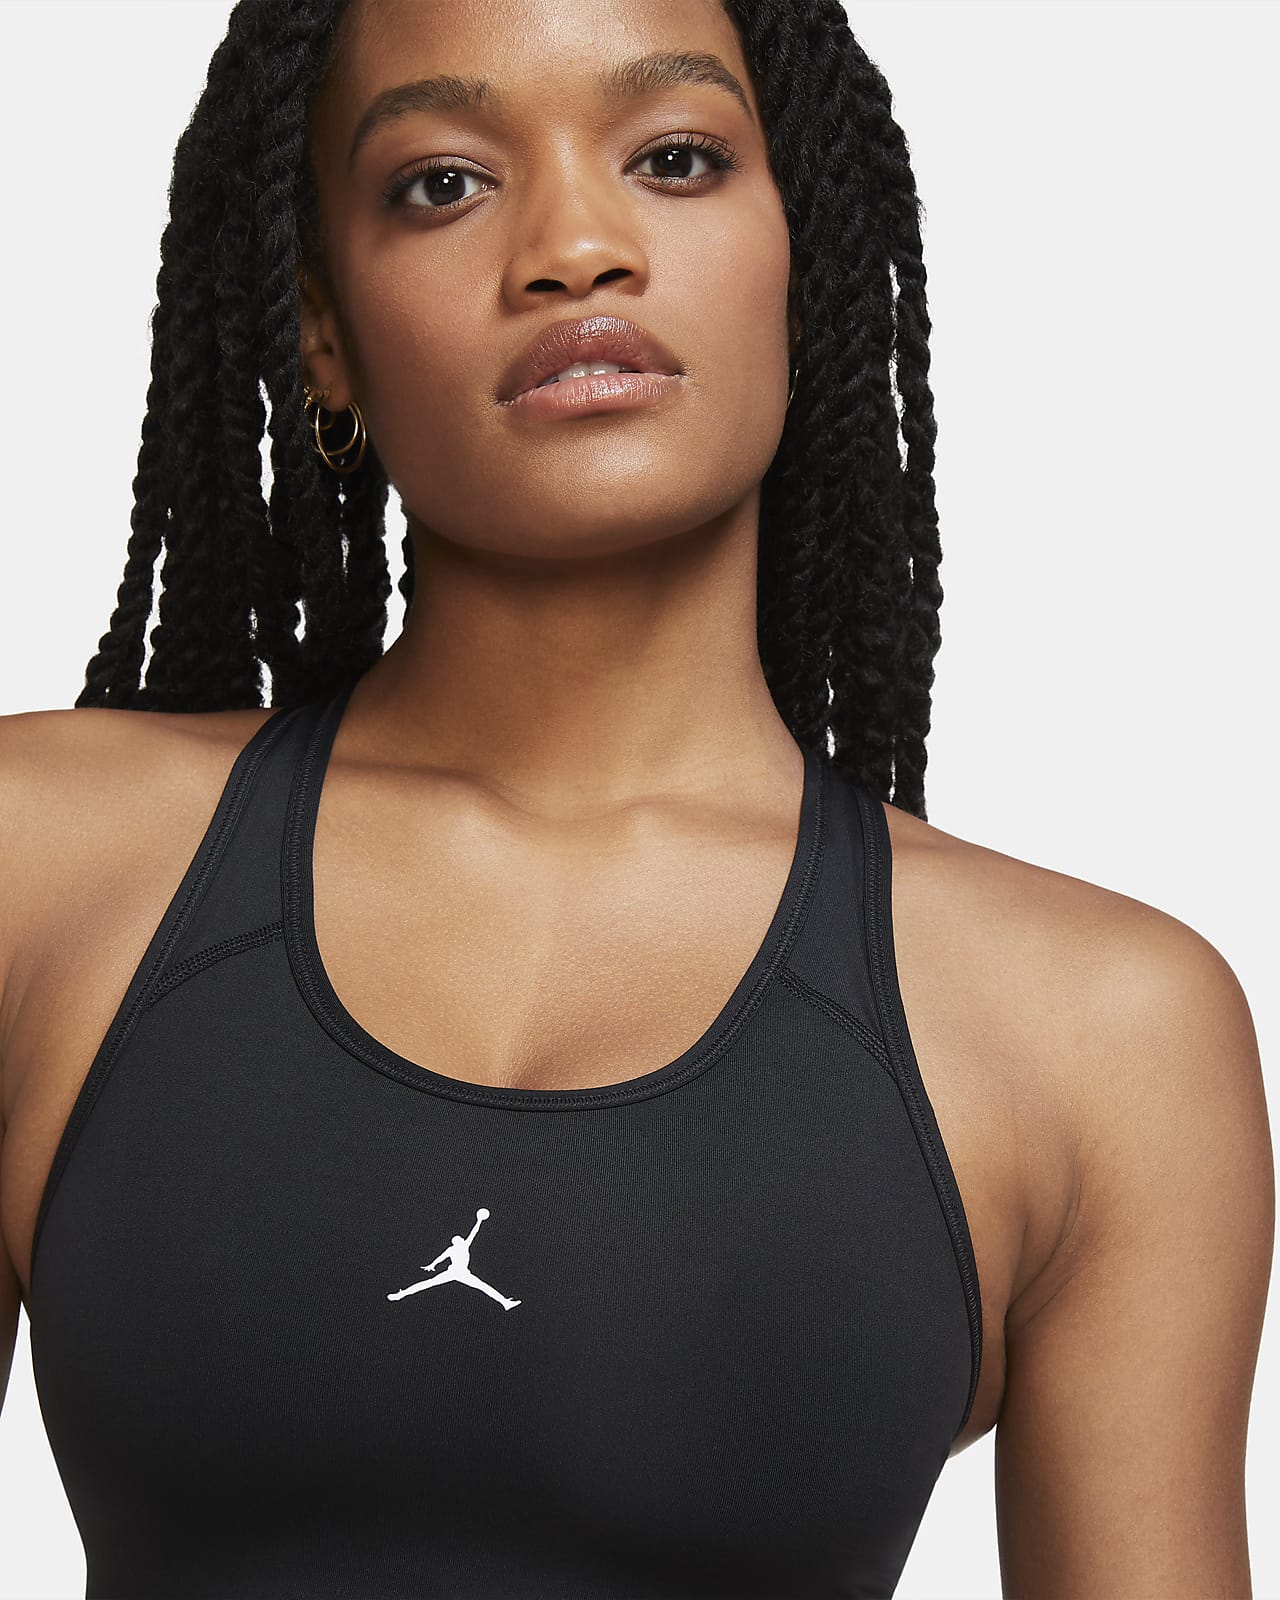 Medium-Support Sports Bra. Nike JP